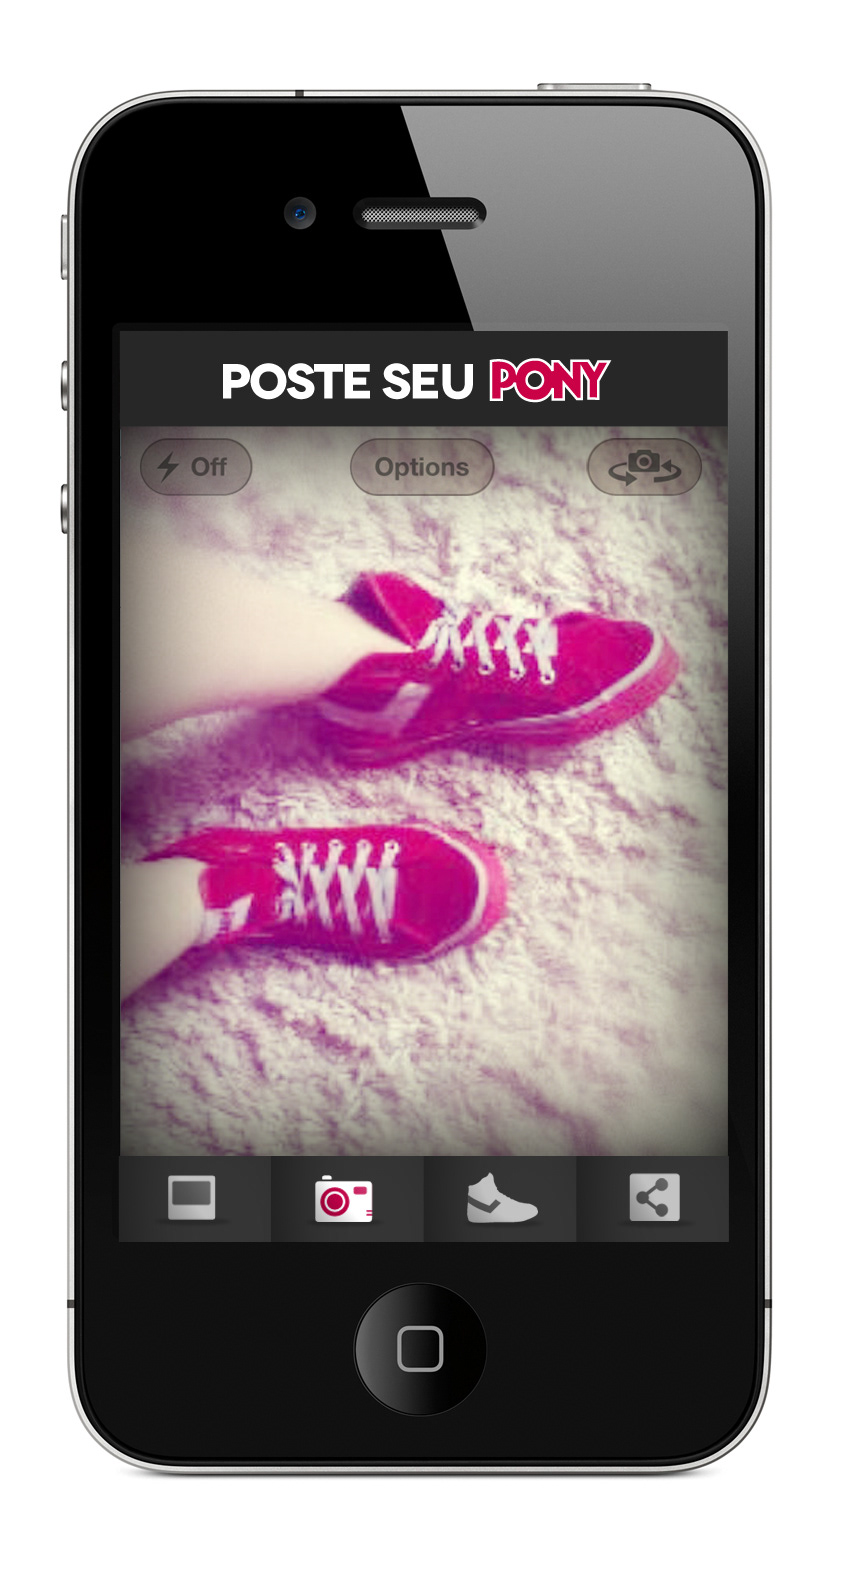 Mobile app pony